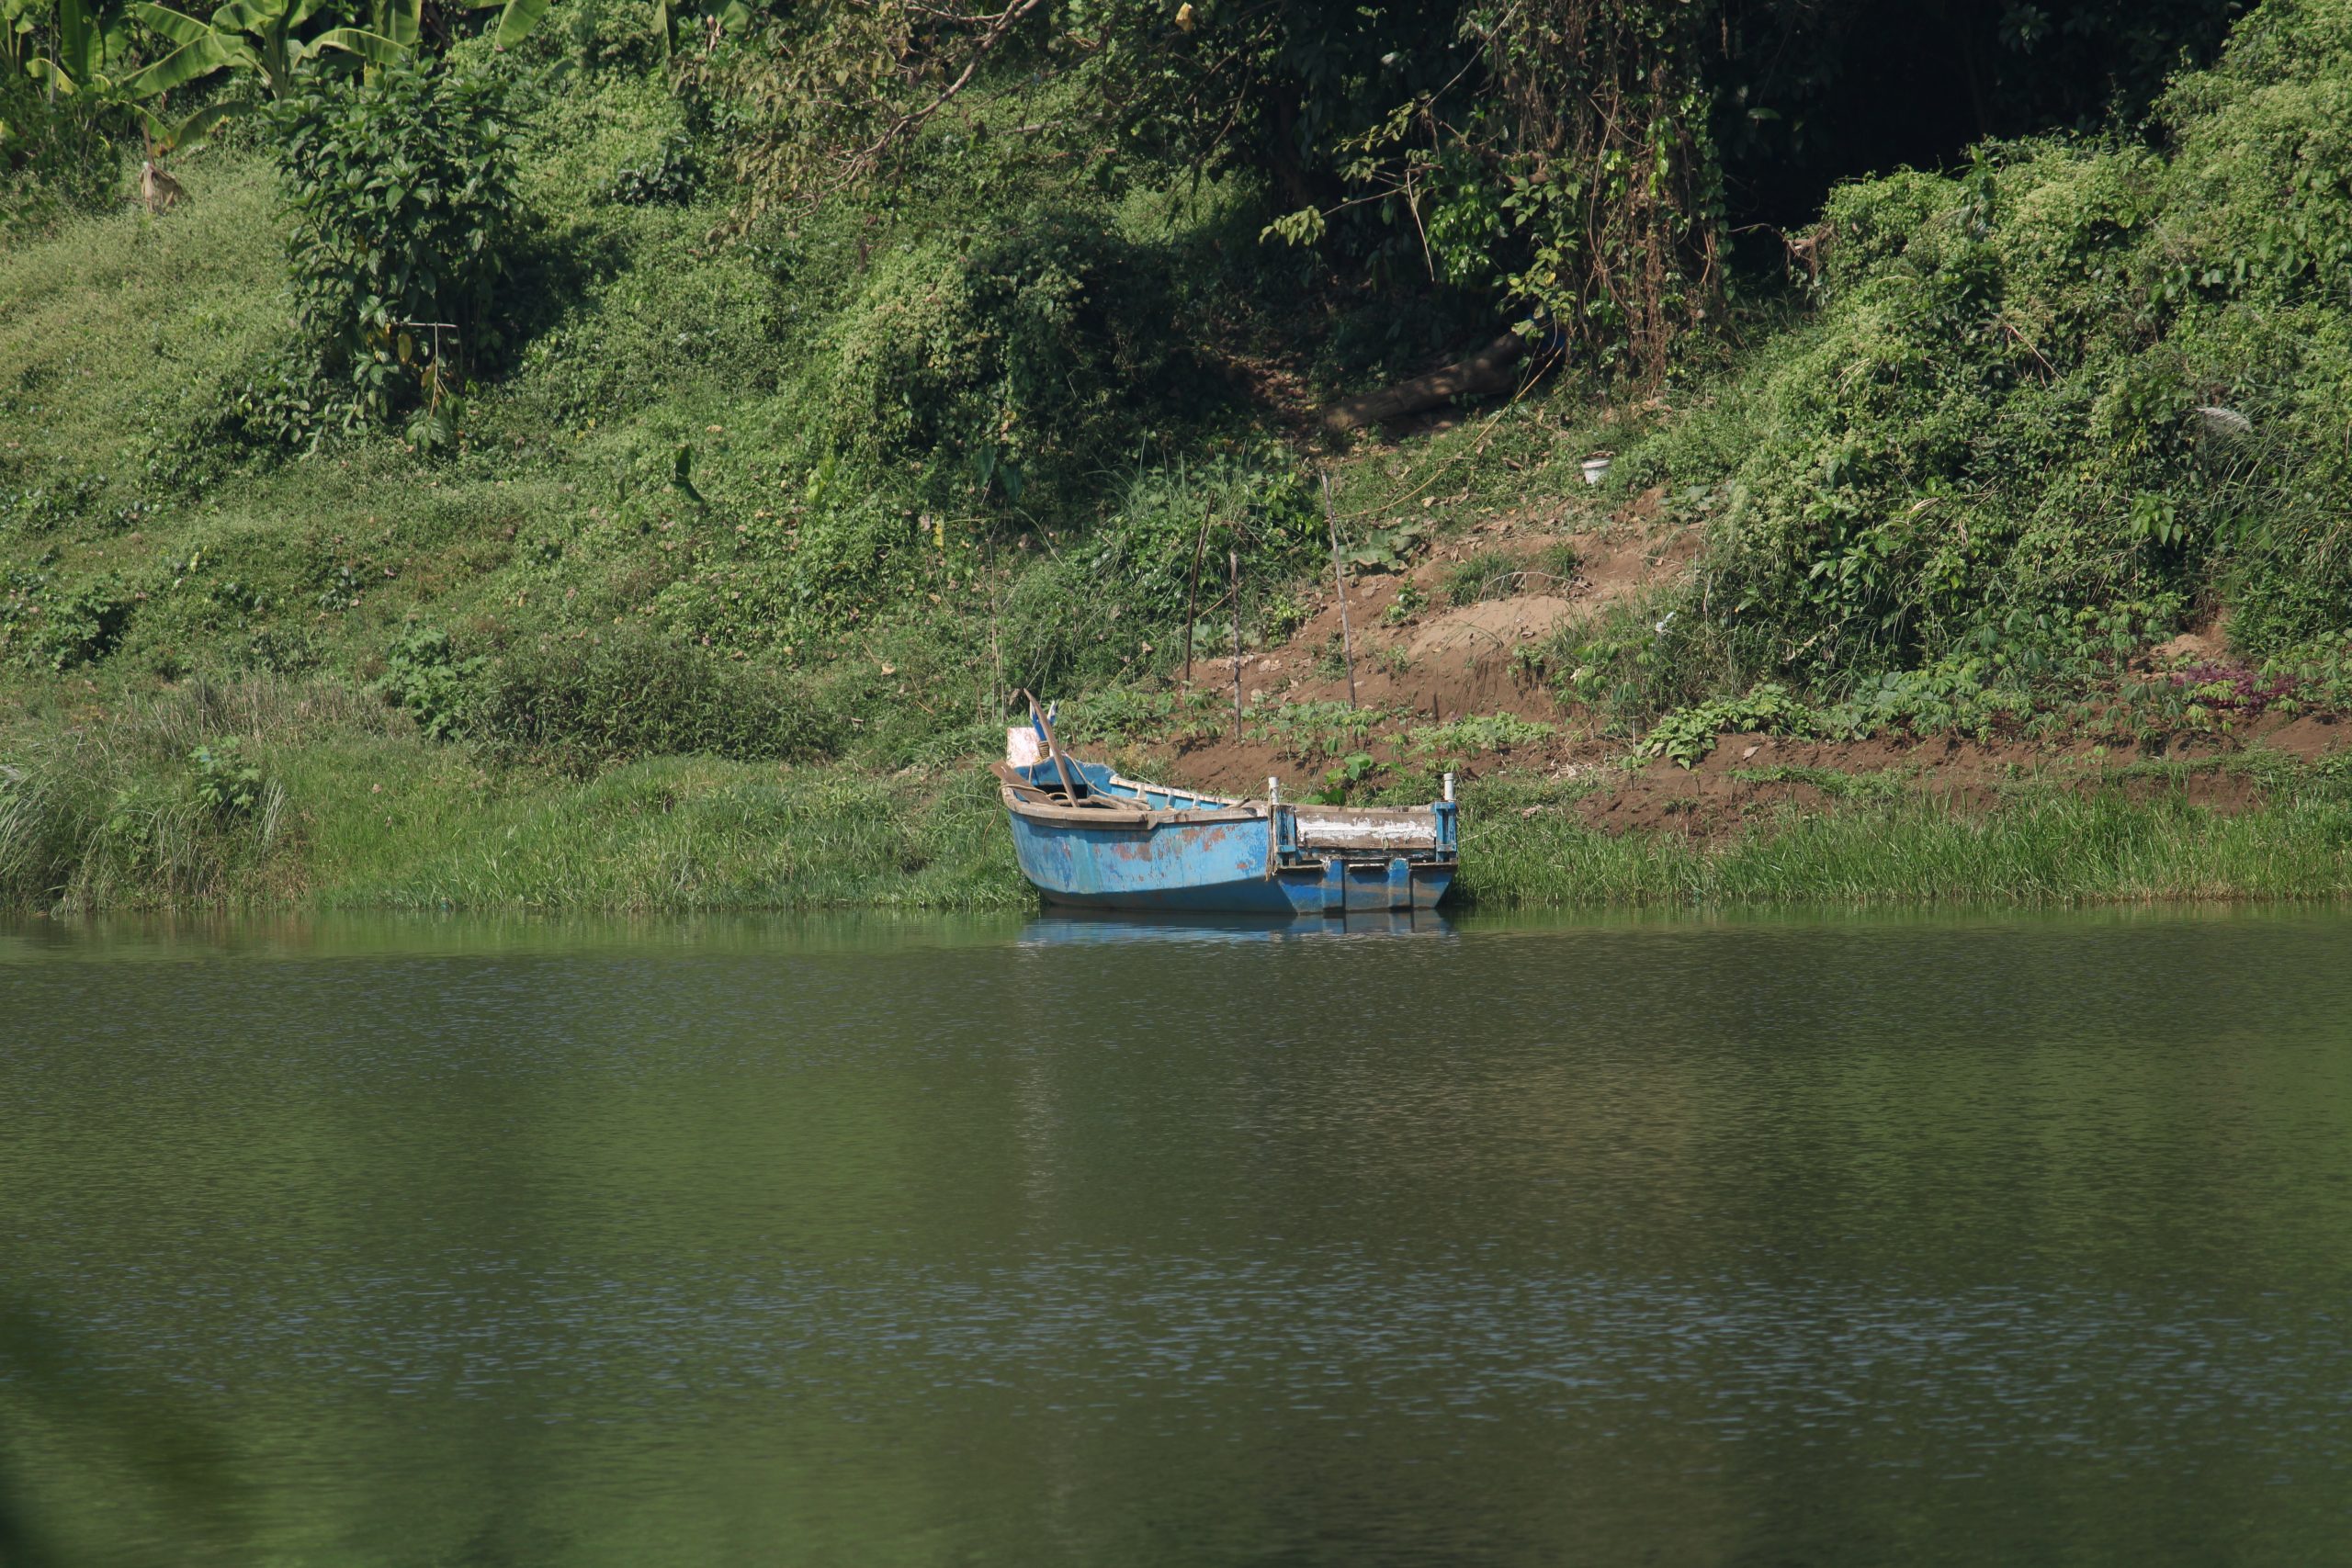 Boat in river near grassy banks